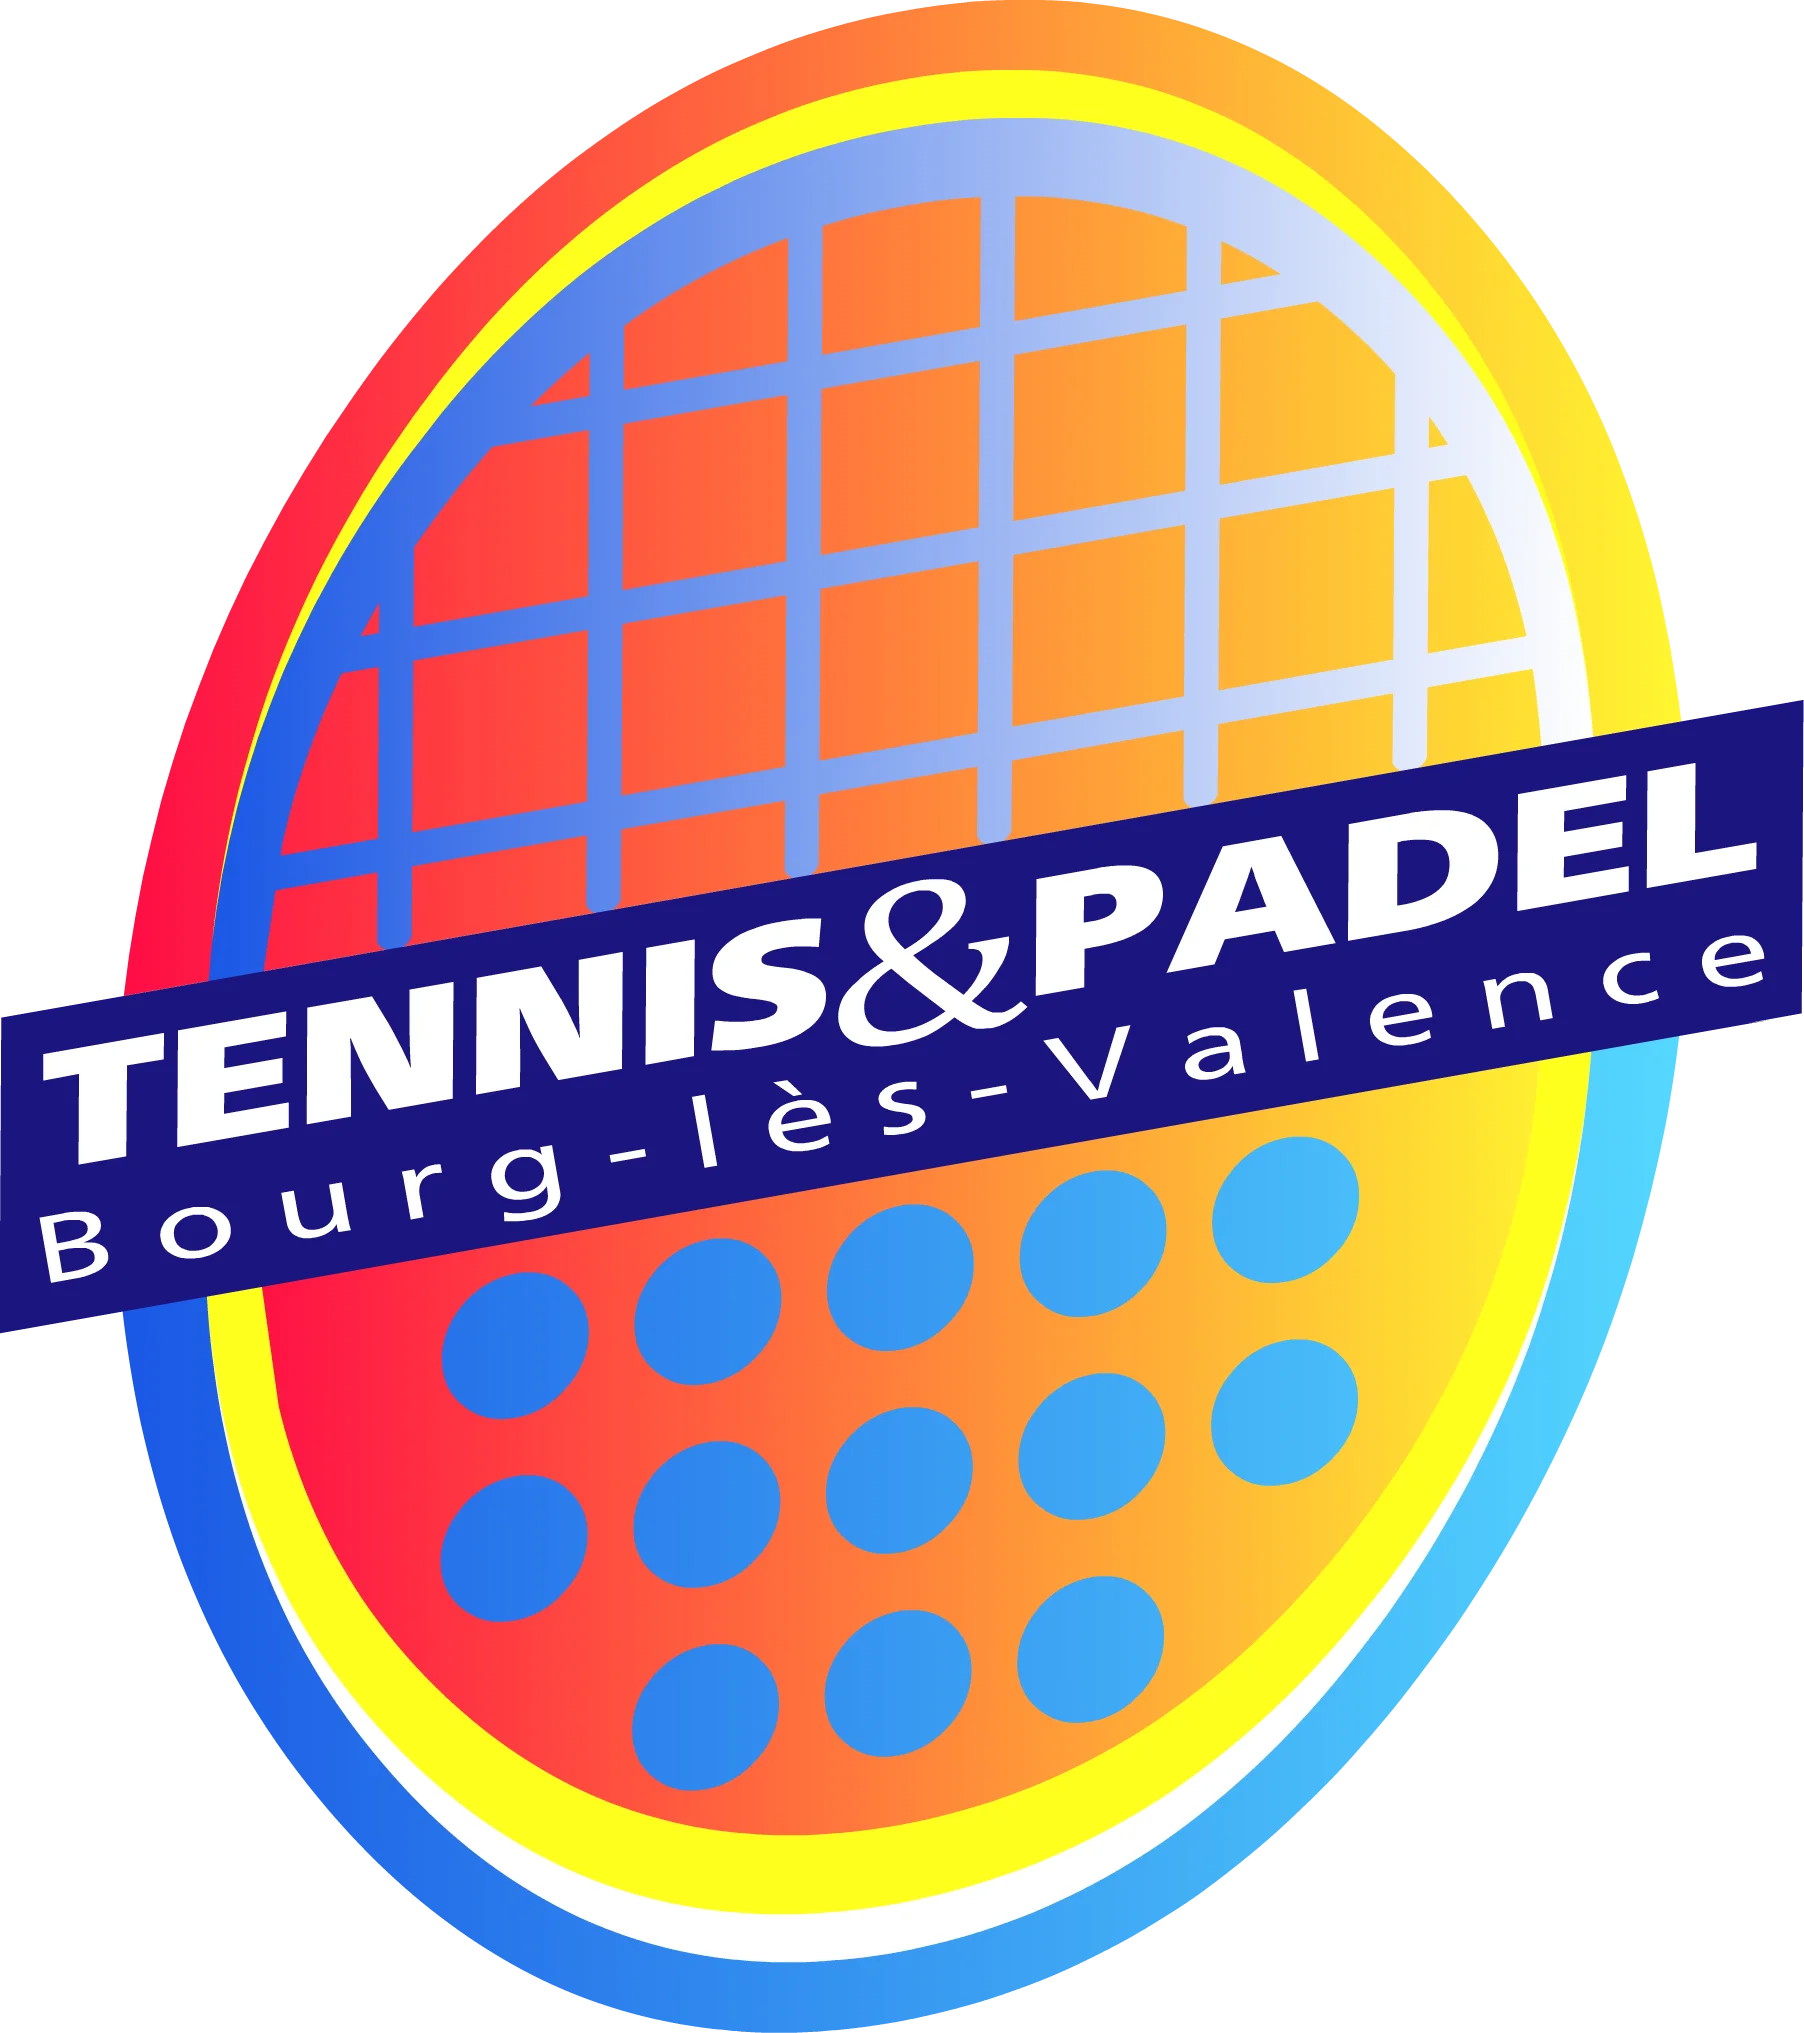 Tennis & Padel Bourg-Lès-Valence